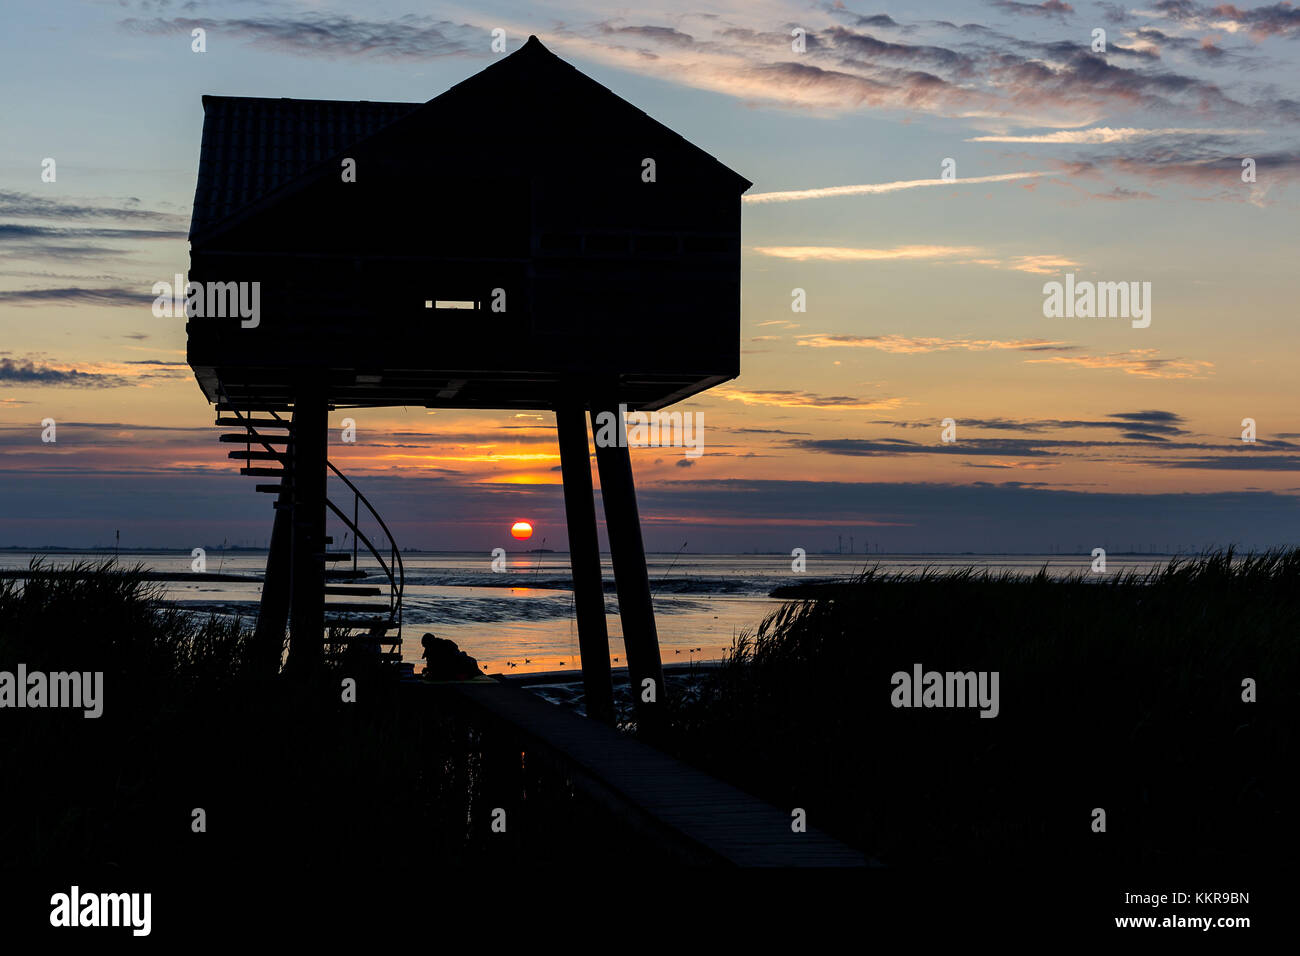 Una casa de madera para la observación de aves en la frontera entre Alemania y los Países Bajos cerca de nieuwe statenzijl Foto de stock